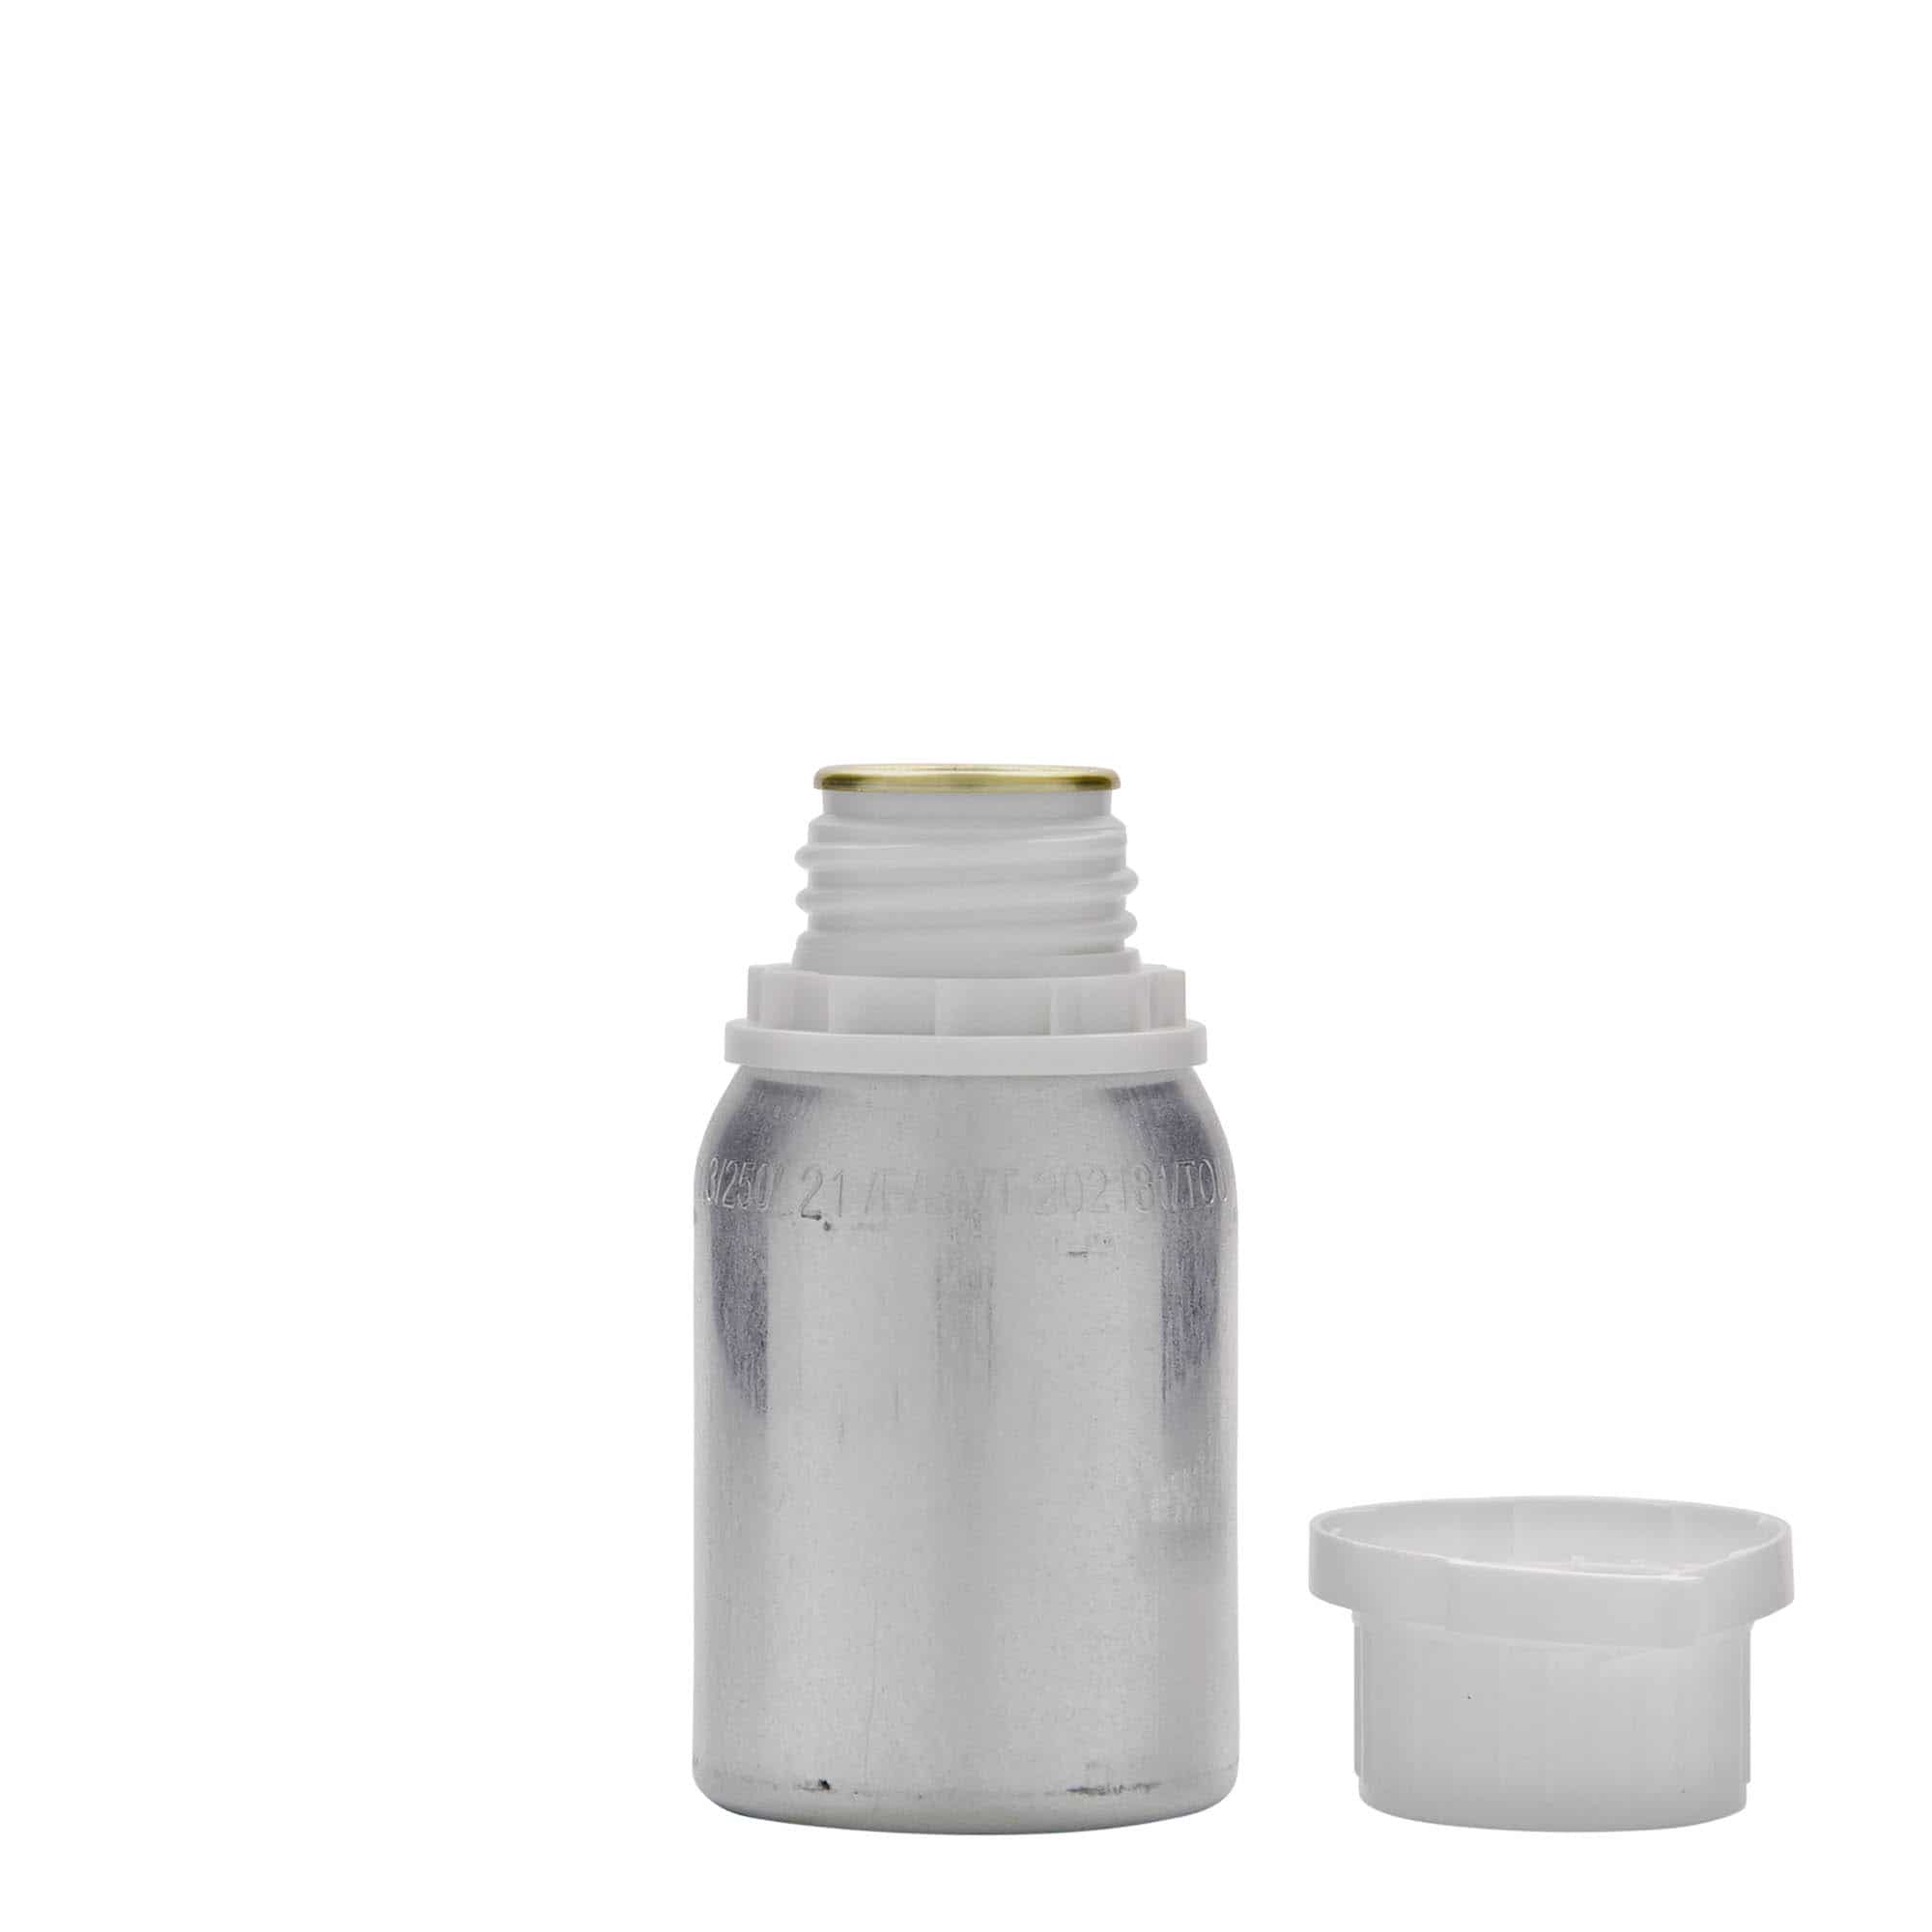 125 ml Aluminiumflasche, Metall, silber, Mündung: DIN 32